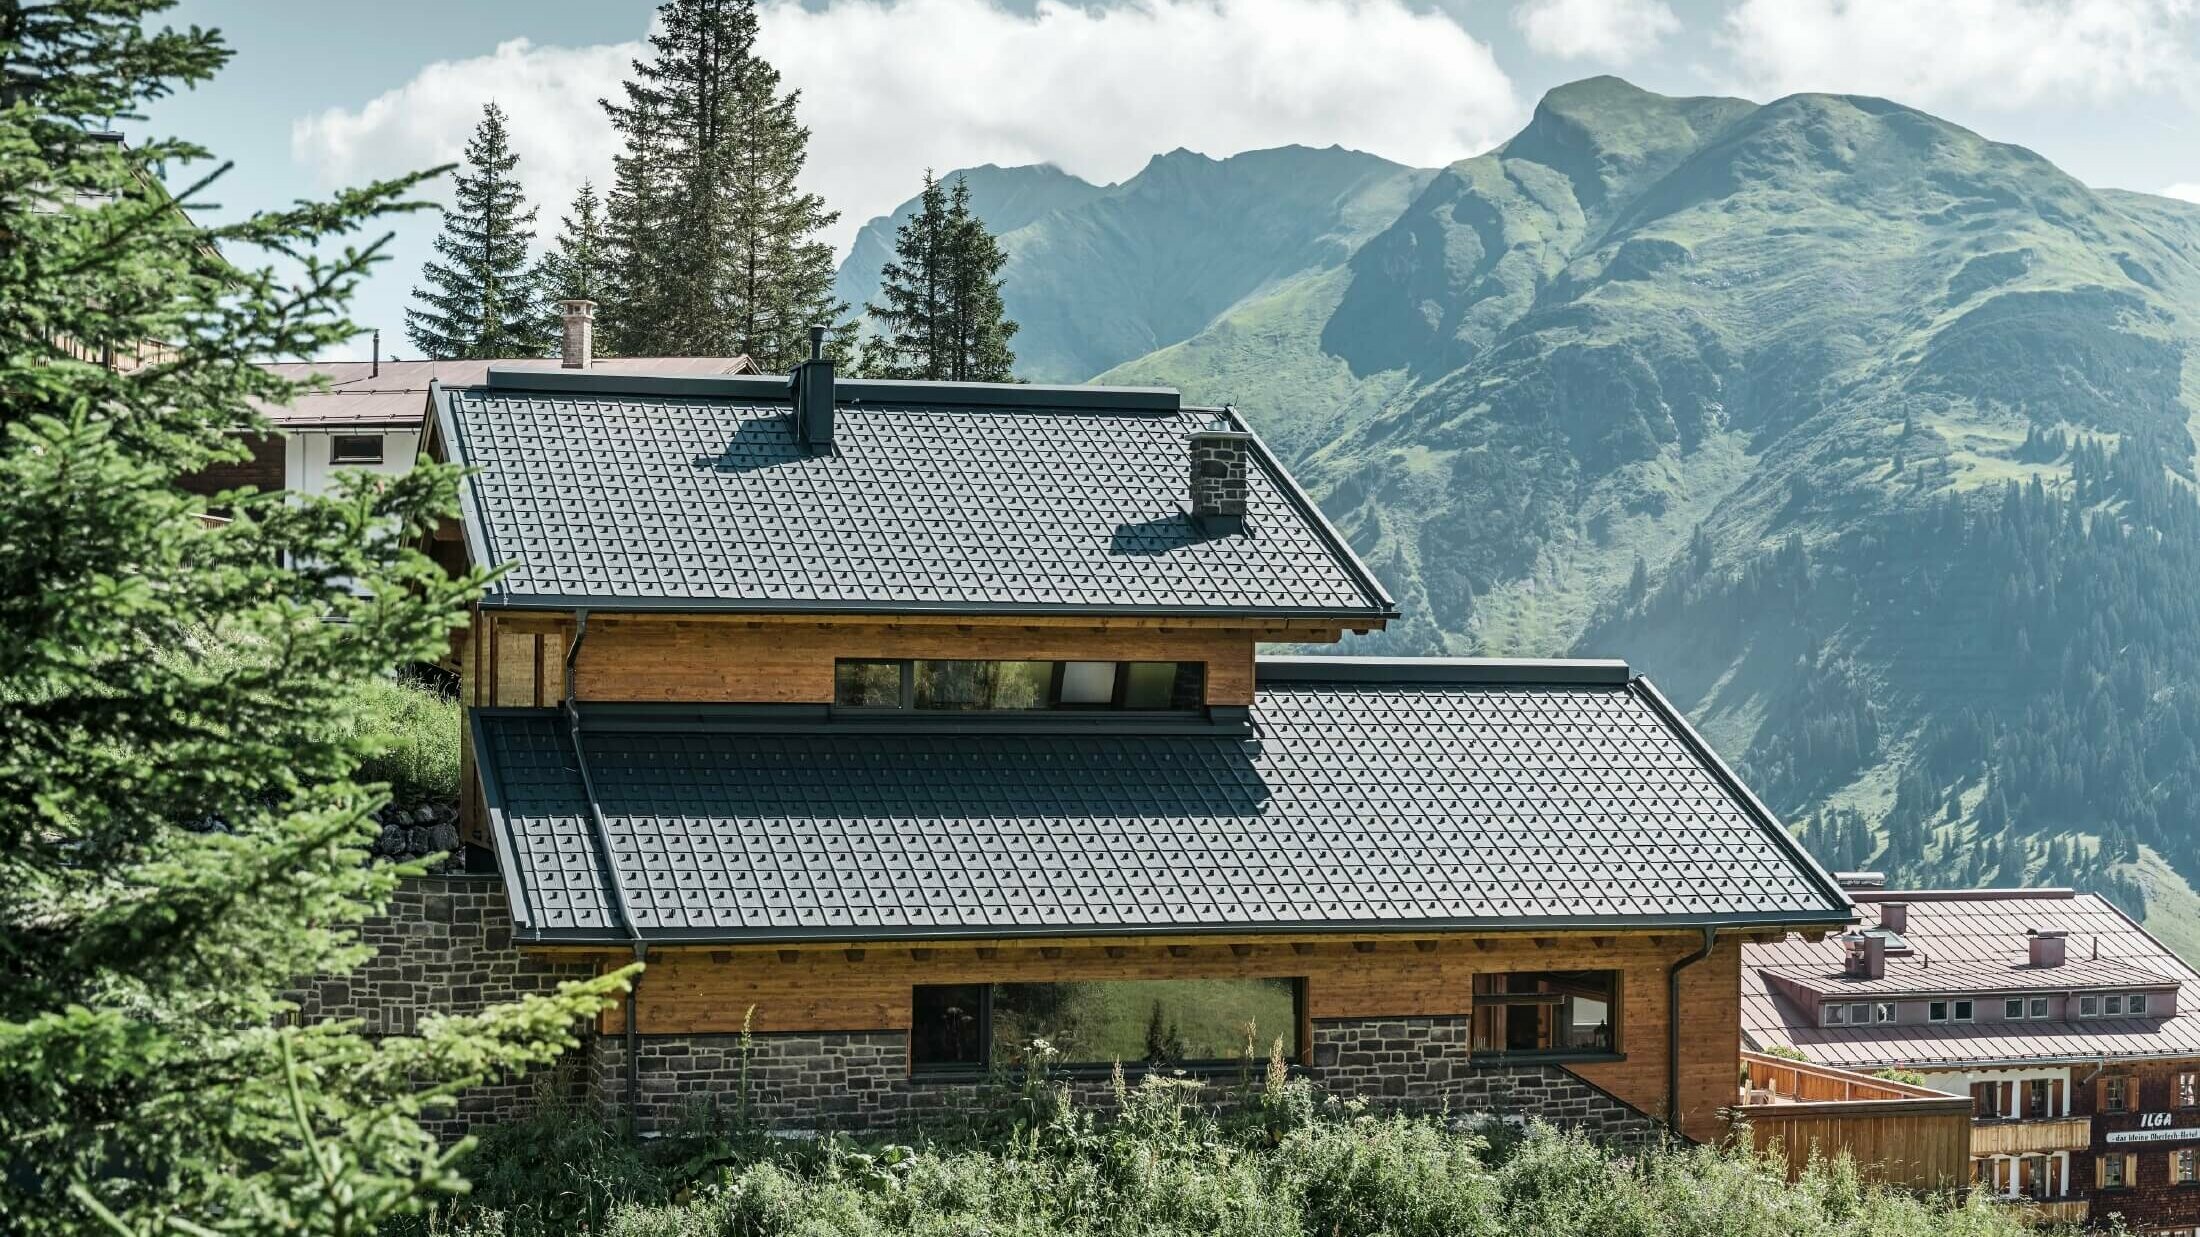 Maison de montagne avec couverture de toit en tuiles PREFA de couleur anthracite